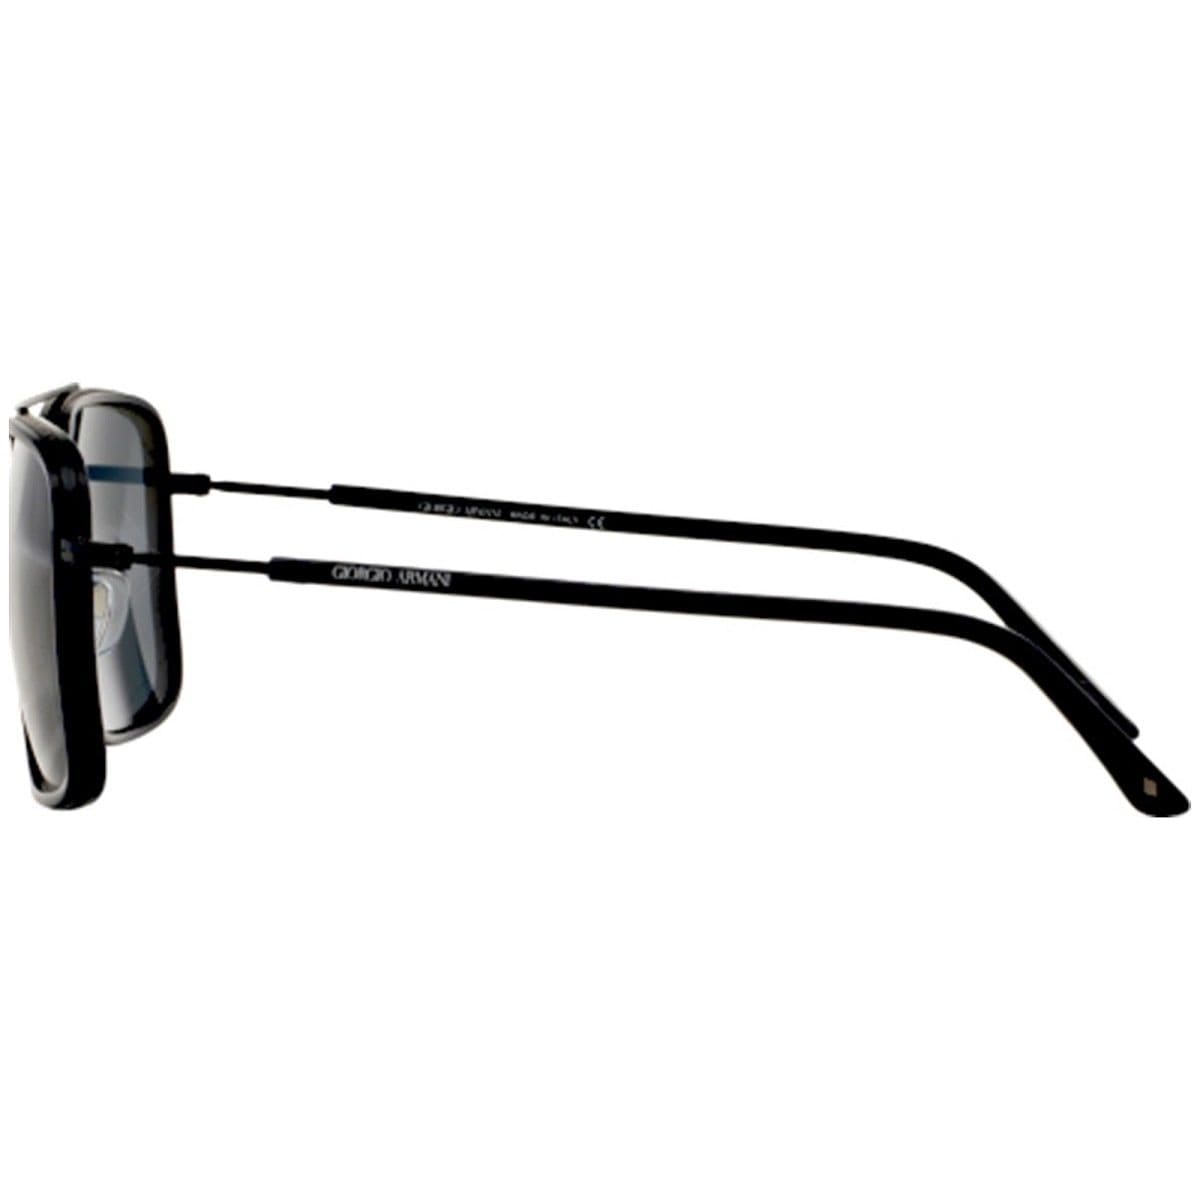 Giorgio Armani AR6031-305687 Blue Square Grey Lens Sunglasses Frames 8053672466836